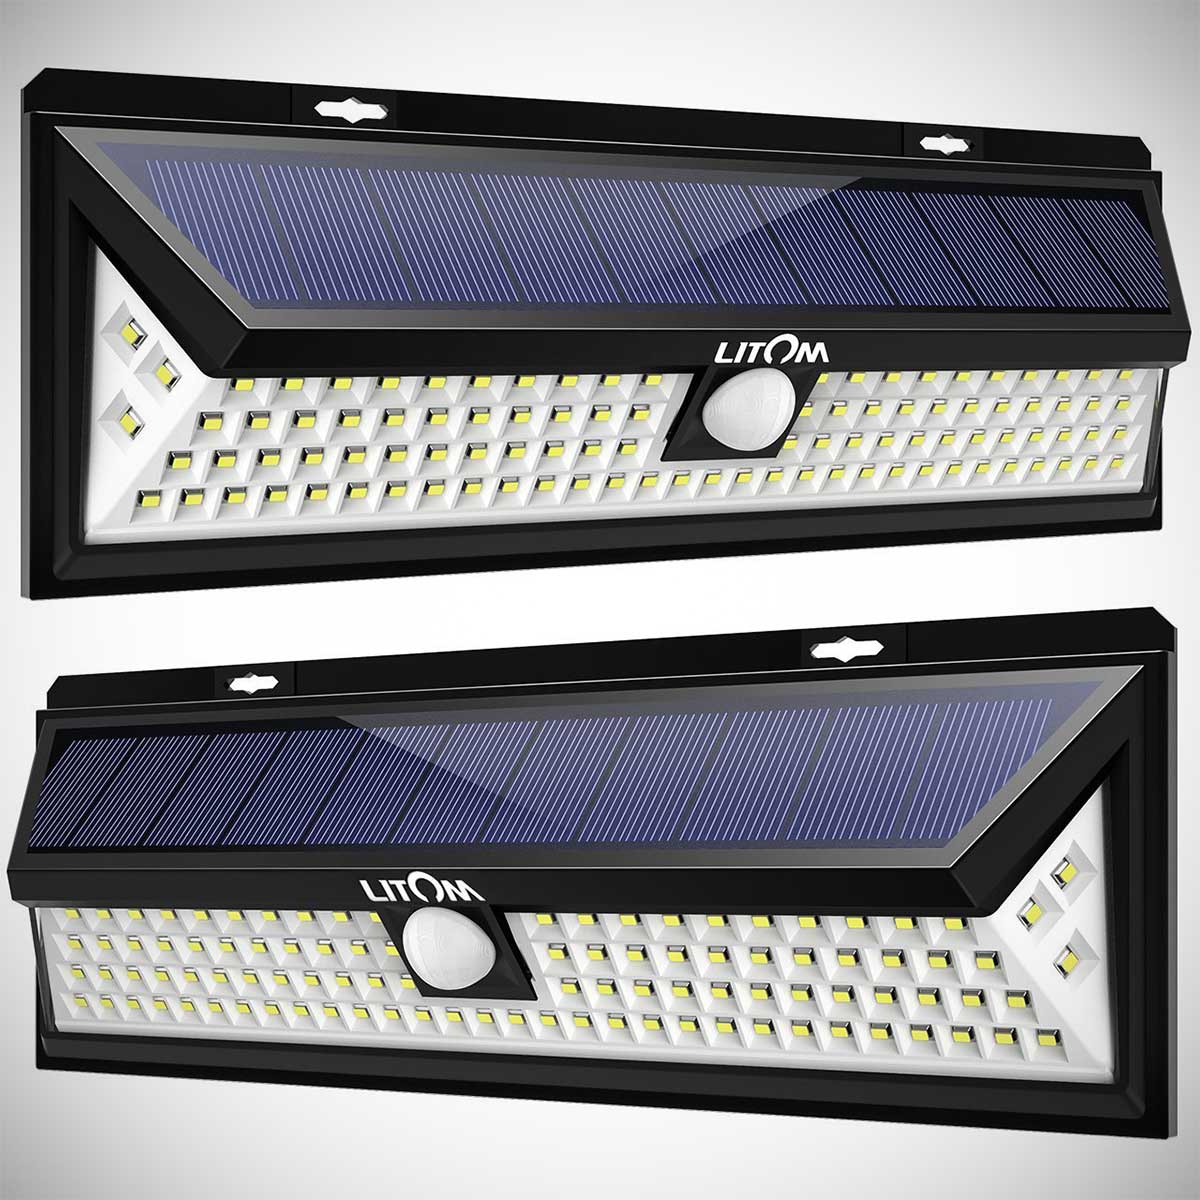 Litom 102 Outdoor LED Solar Lights